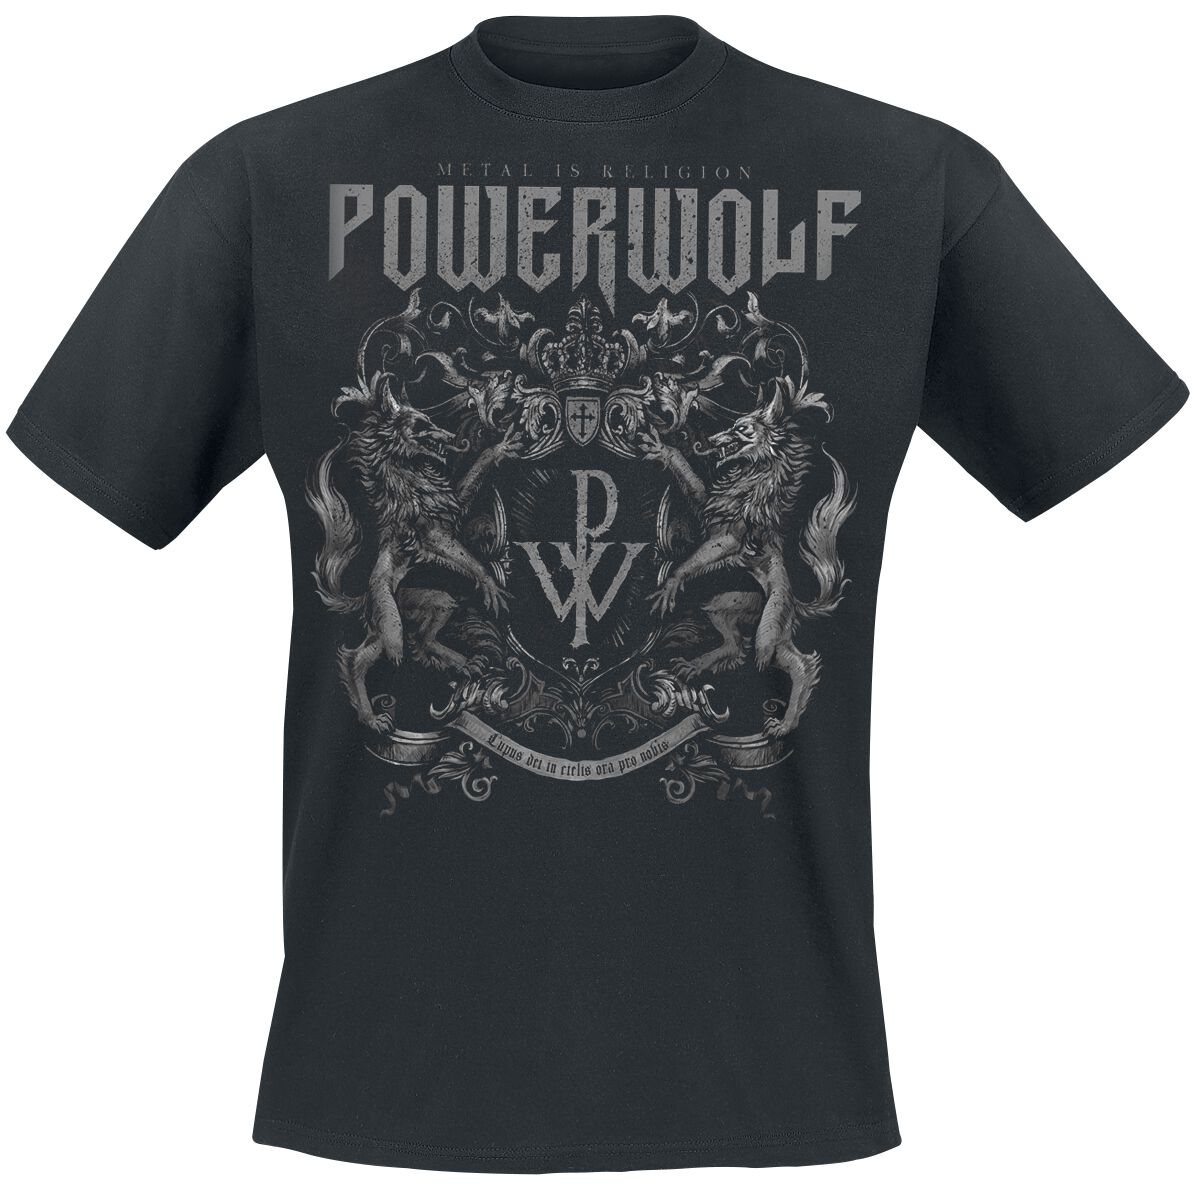 Powerwolf T-Shirt - Crest - Metal Is Religion - S bis 3XL - für Männer - Größe S - schwarz  - Lizenziertes Merchandise!